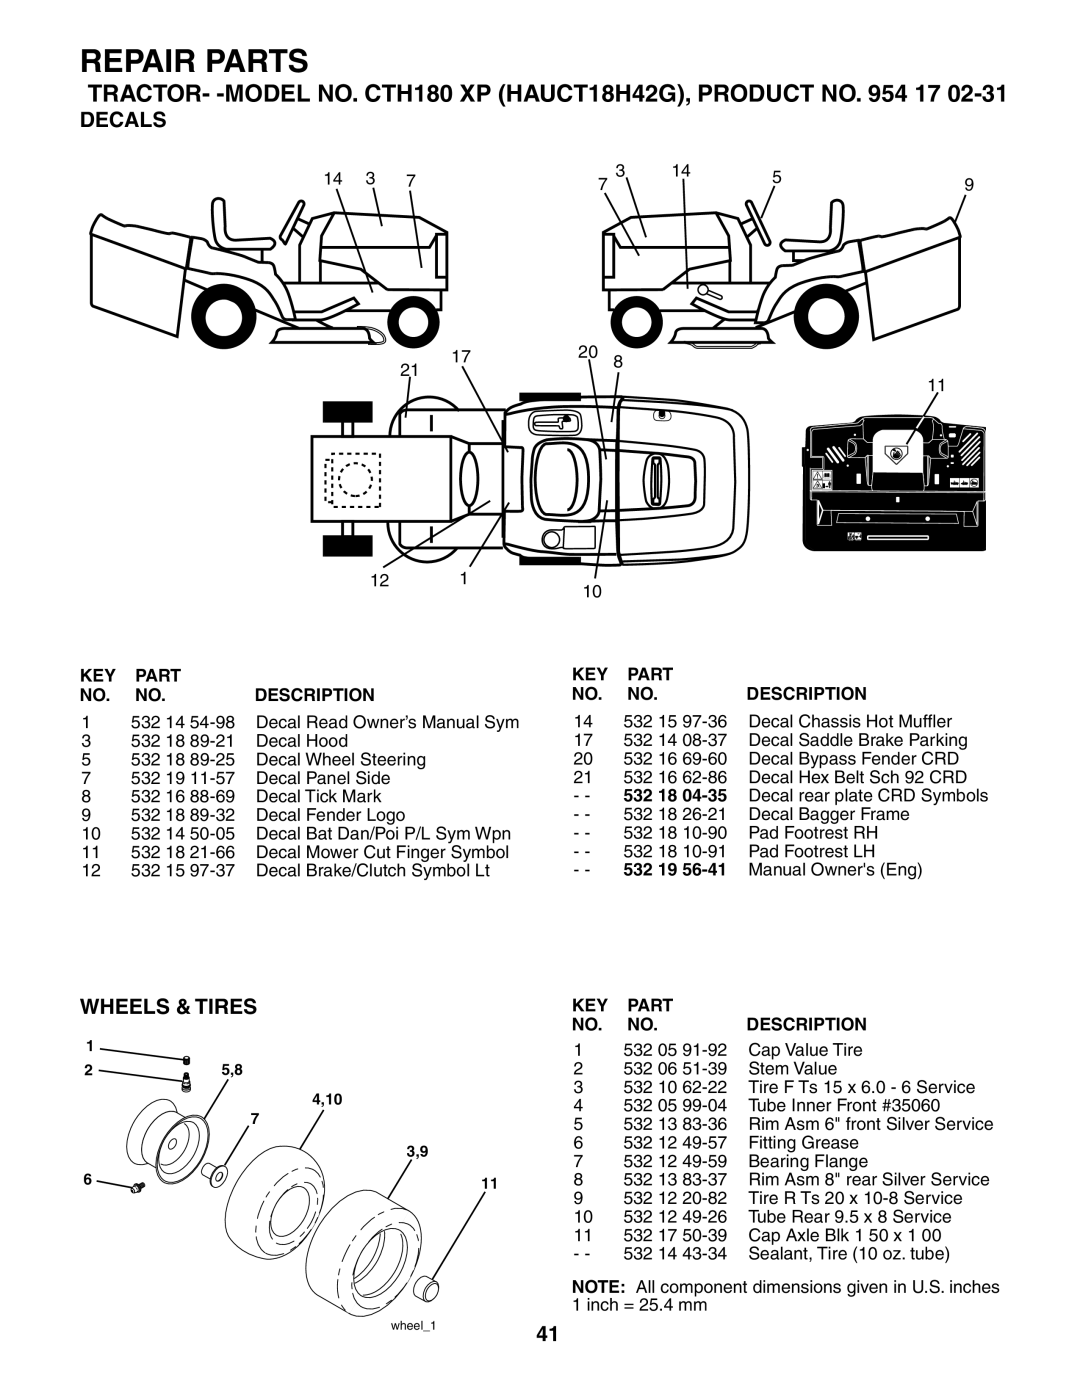 Husqvarna CTH180 XP 02764 owner manual Decals, Wheels & Tires, Repair Parts, Description, 532 19 